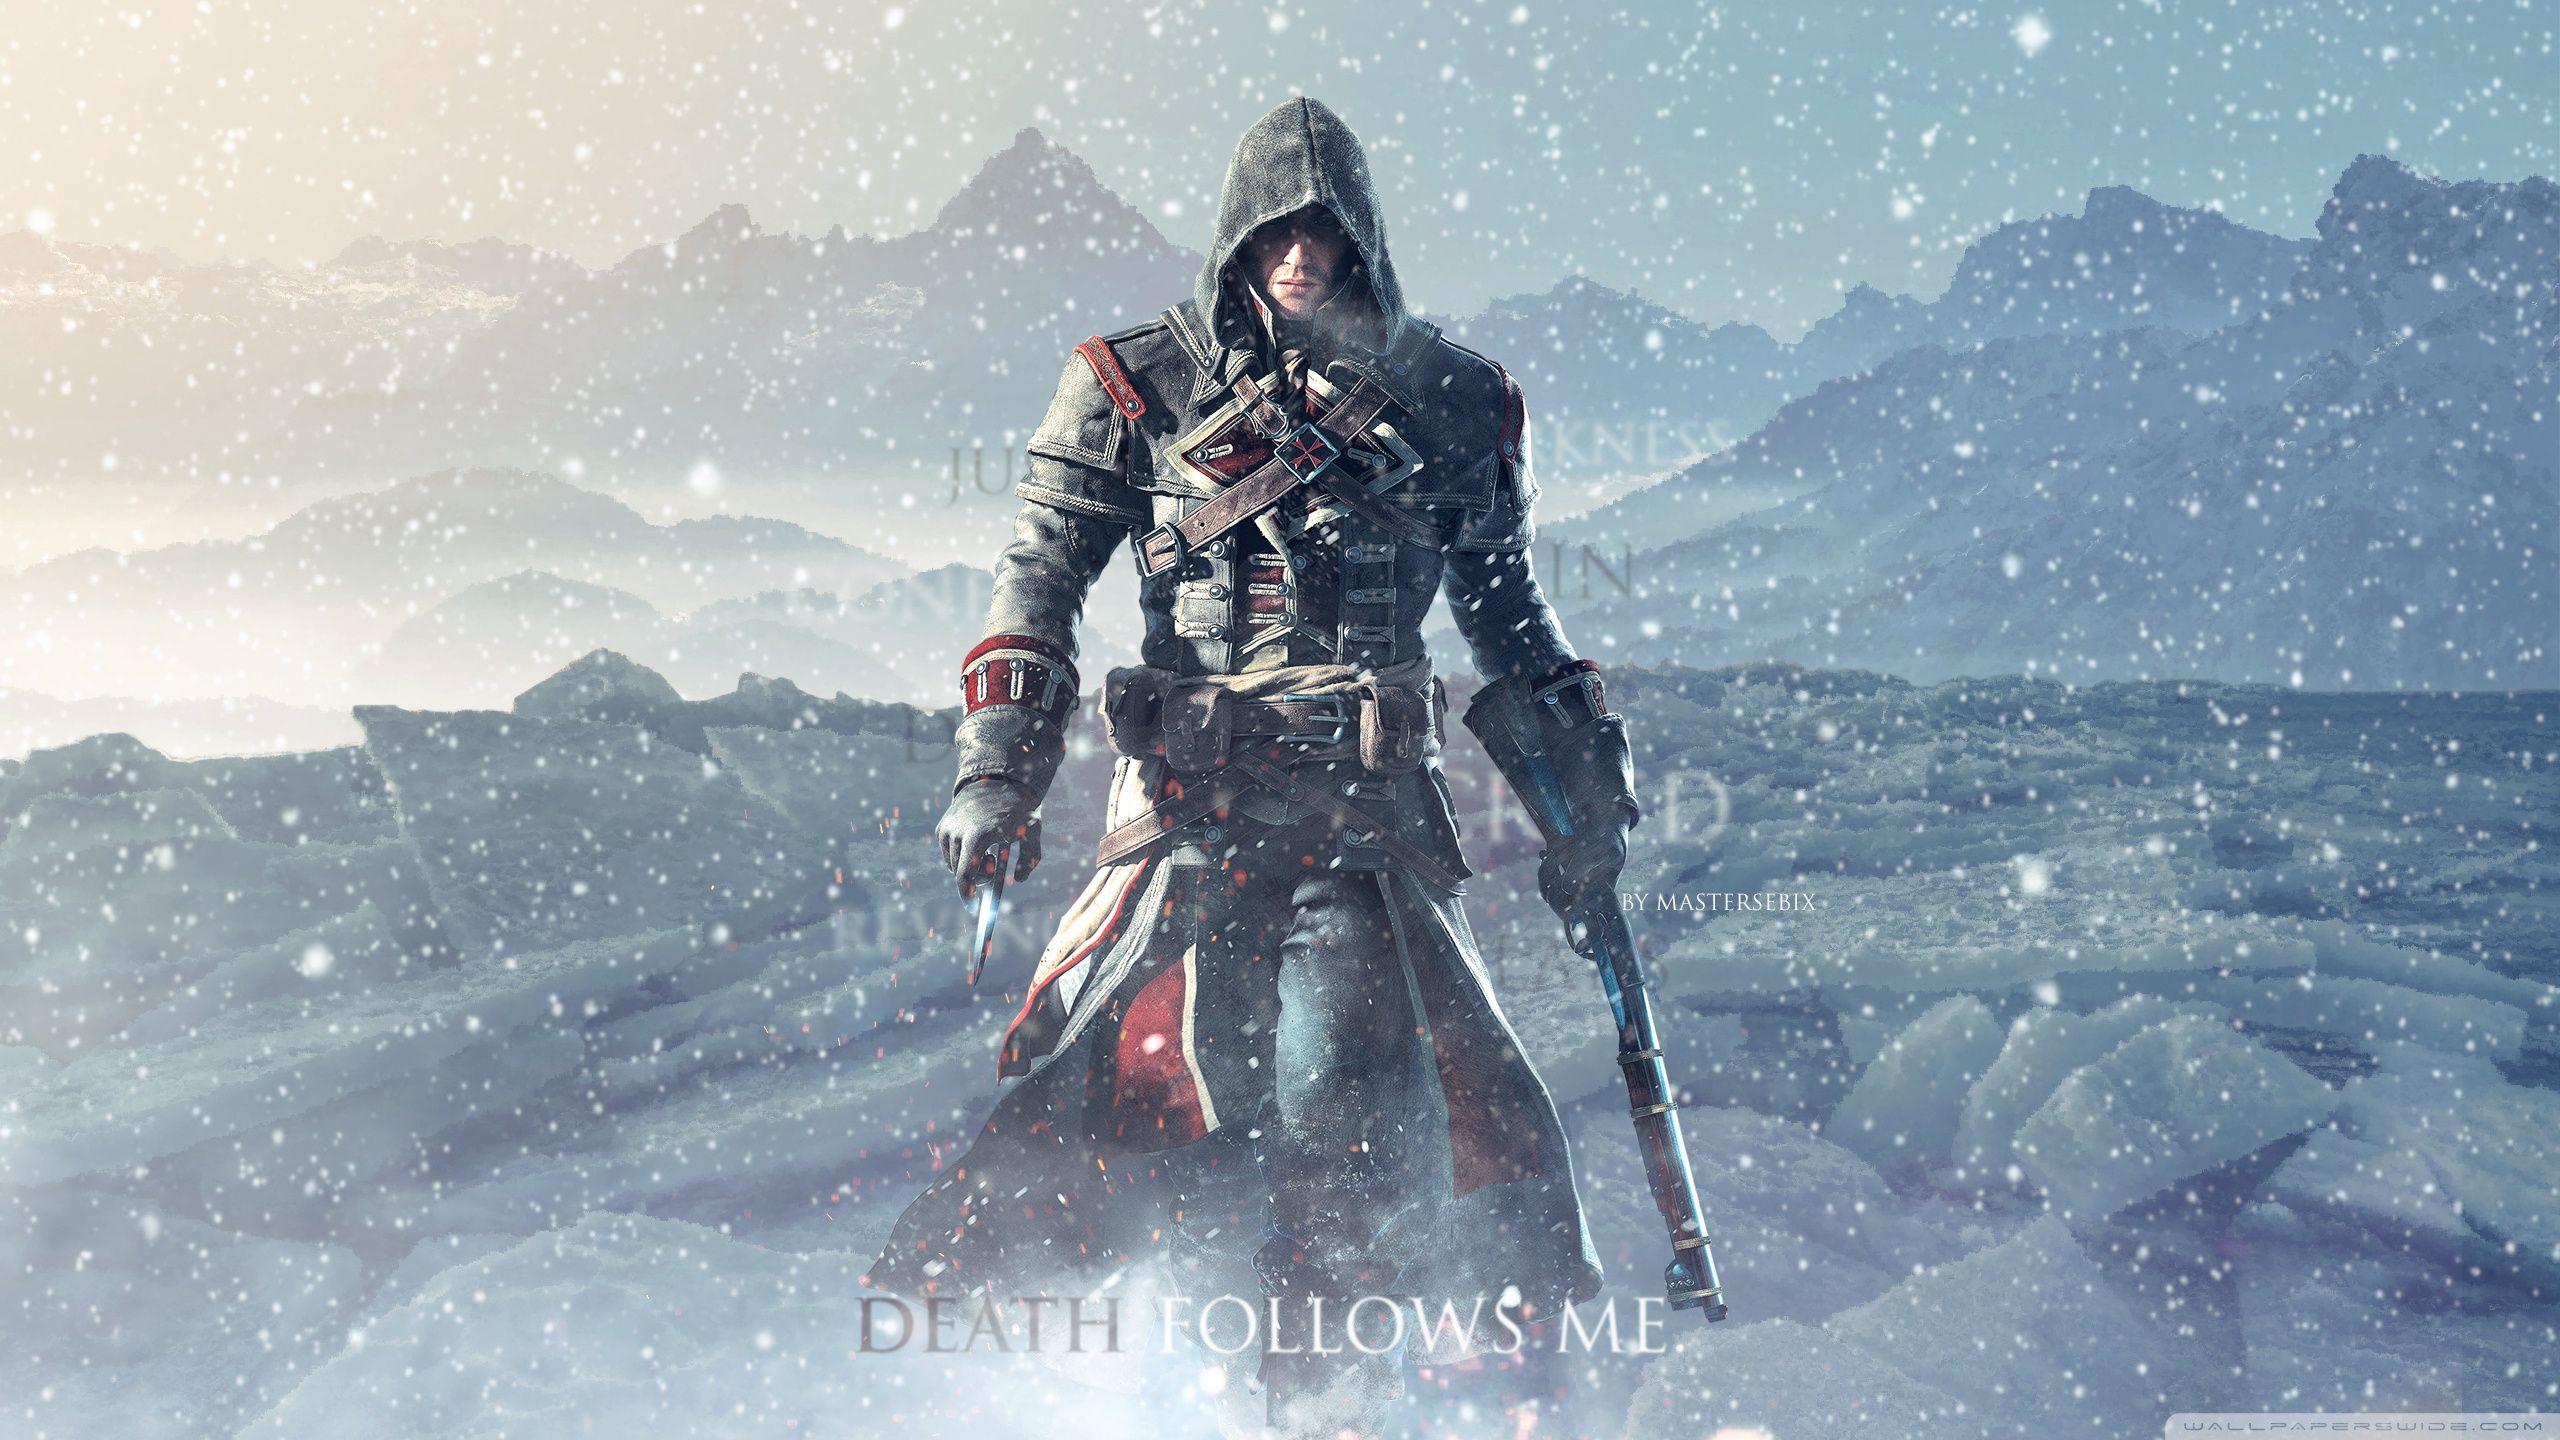 Assassins Creed Rogue Follows Me. HD desktop wallpaper